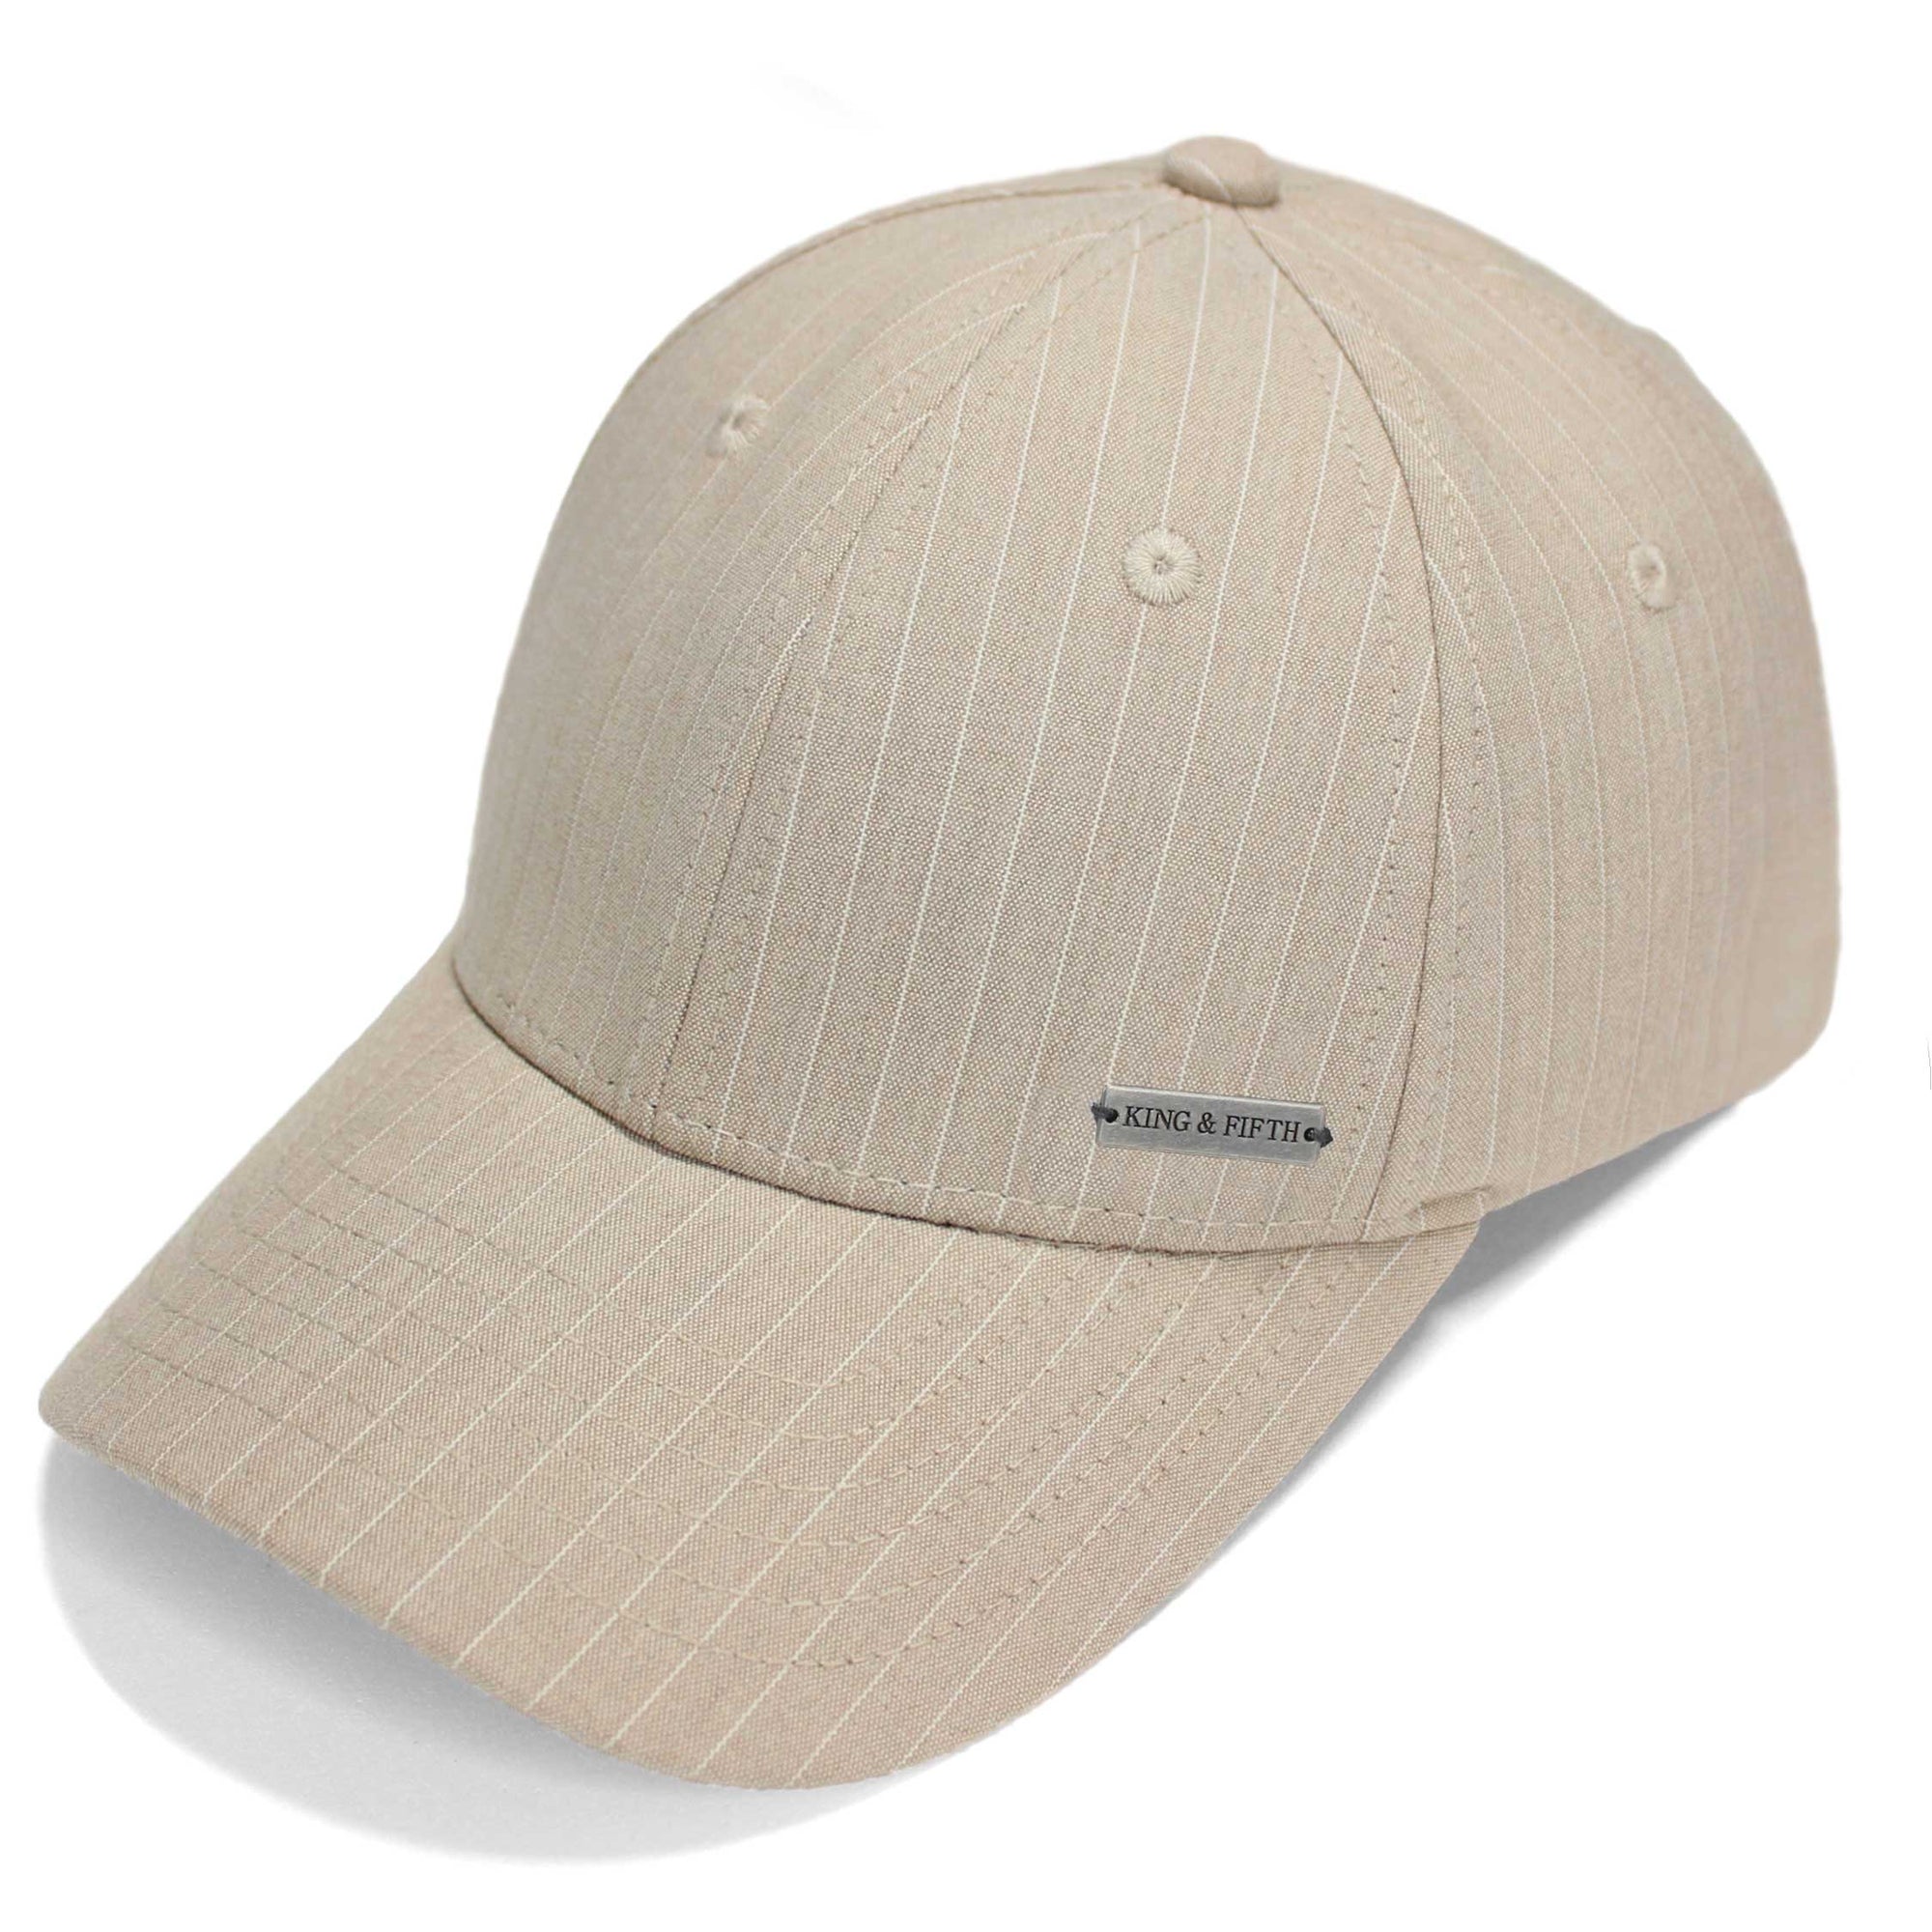 Low profile baseball cap